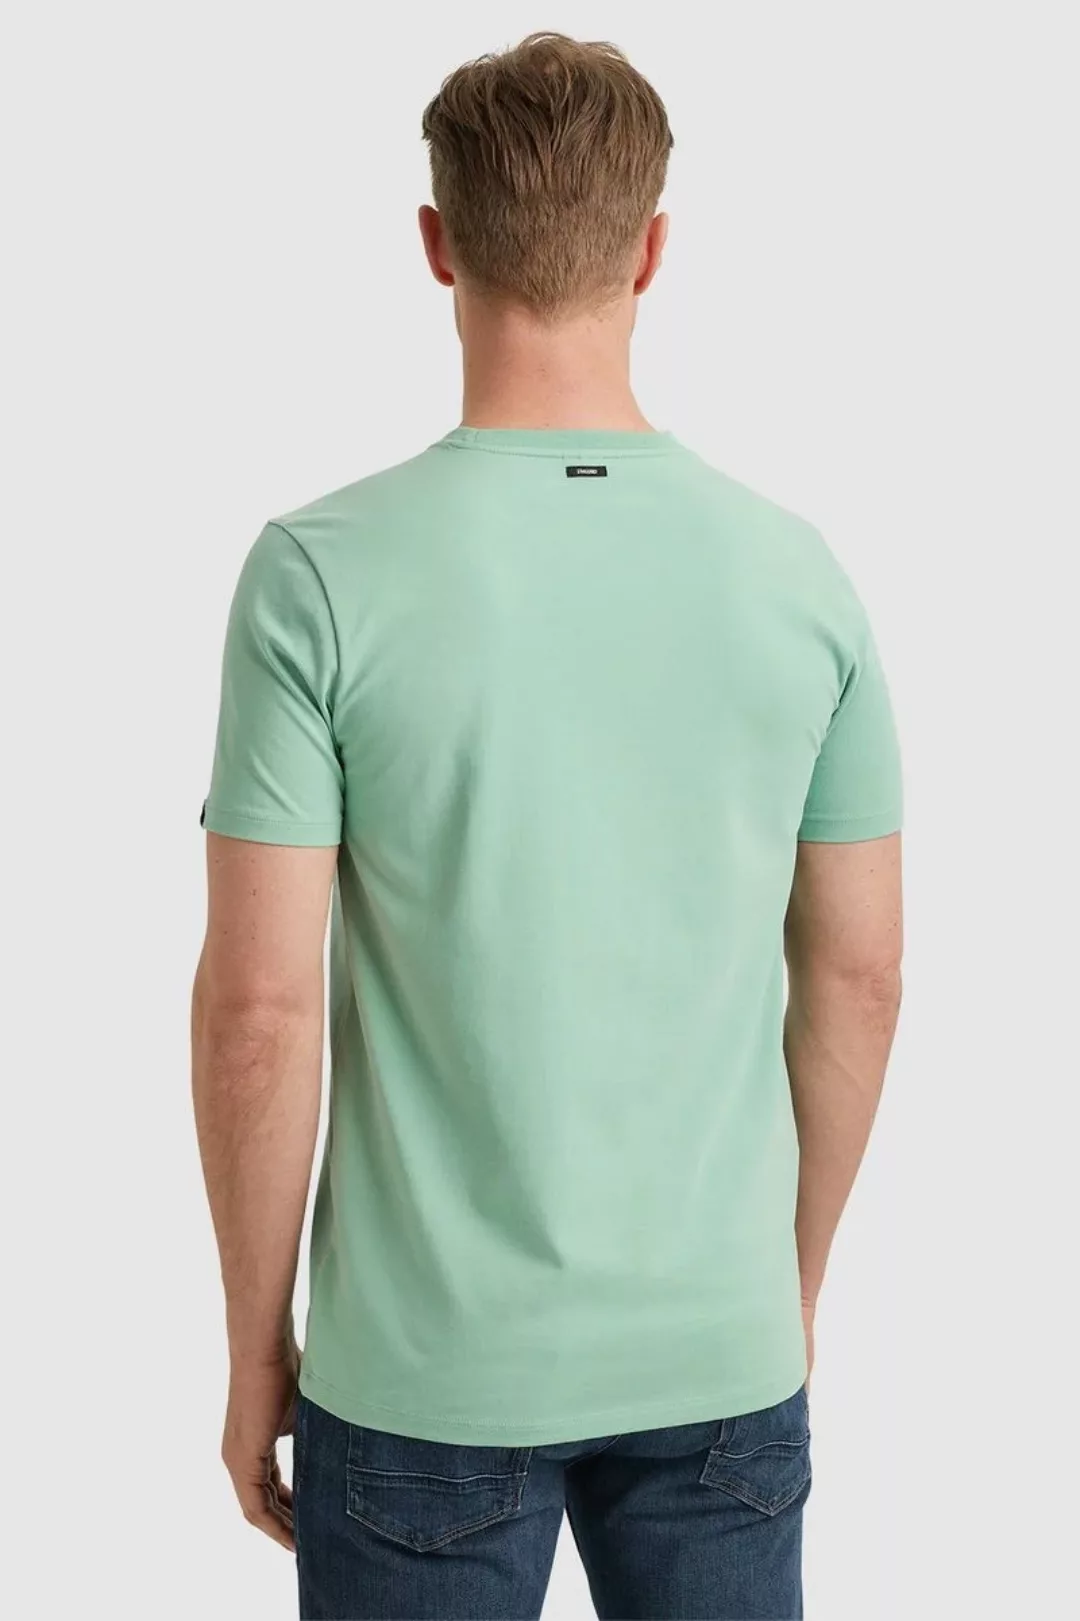 Vanguard T-Shirt Jersey Hellgrün - Größe XL günstig online kaufen